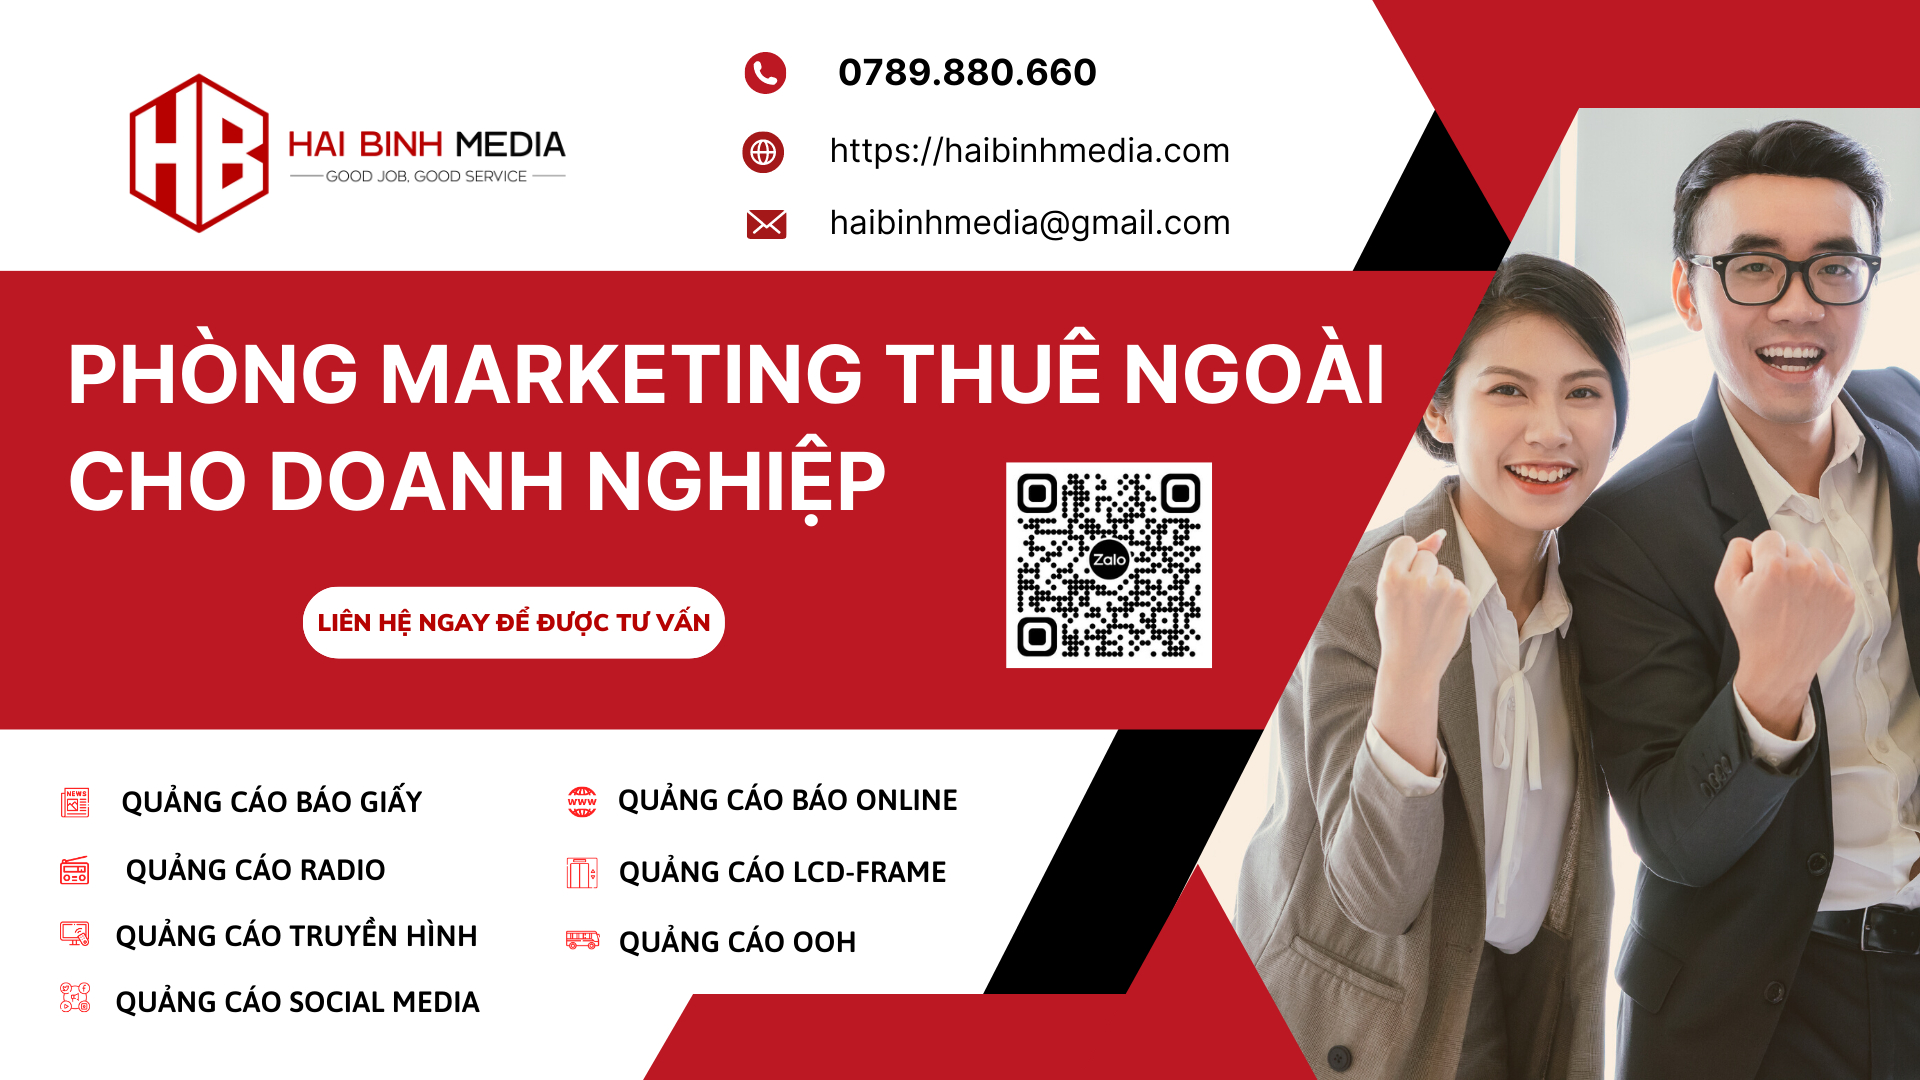 Hải Bình Media - Phòng Marketing thuê ngoài cho doanh nghiệp